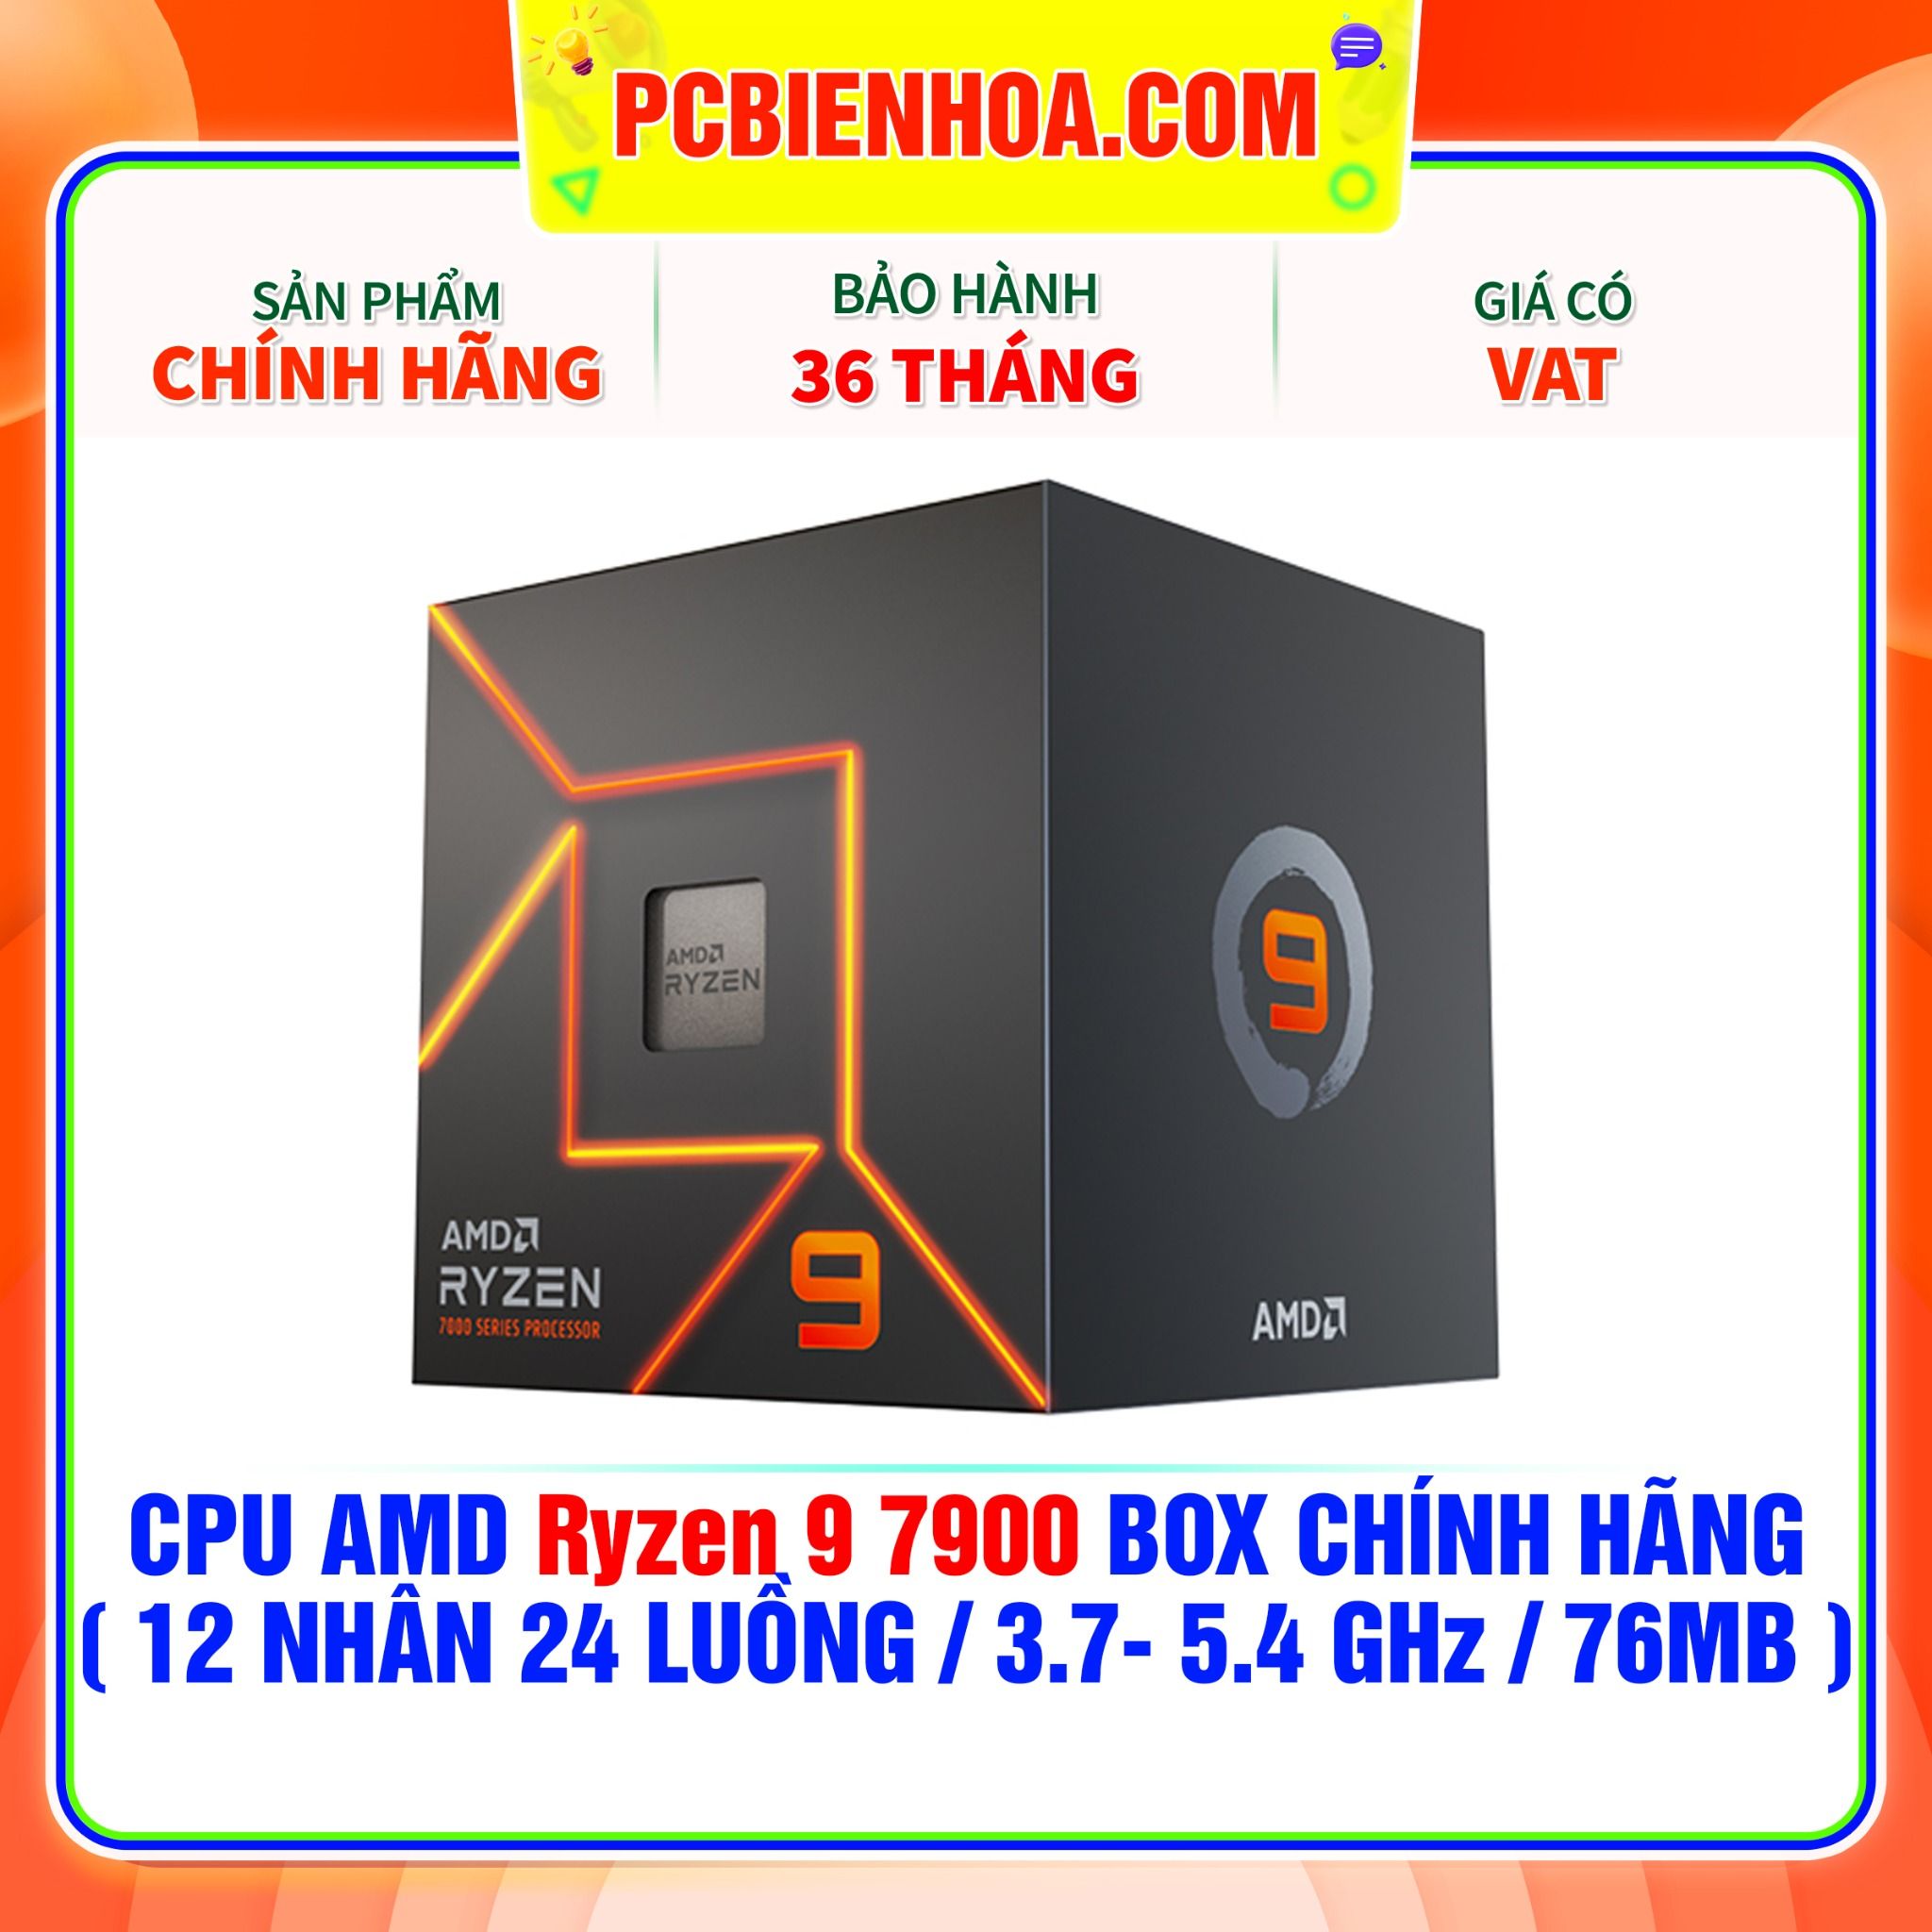  CPU AMD Ryzen 9 7900 BOX CHÍNH HÃNG ( 12 NHÂN 24 LUỒNG / 3.7- 5.4 GHz / 76MB ) 